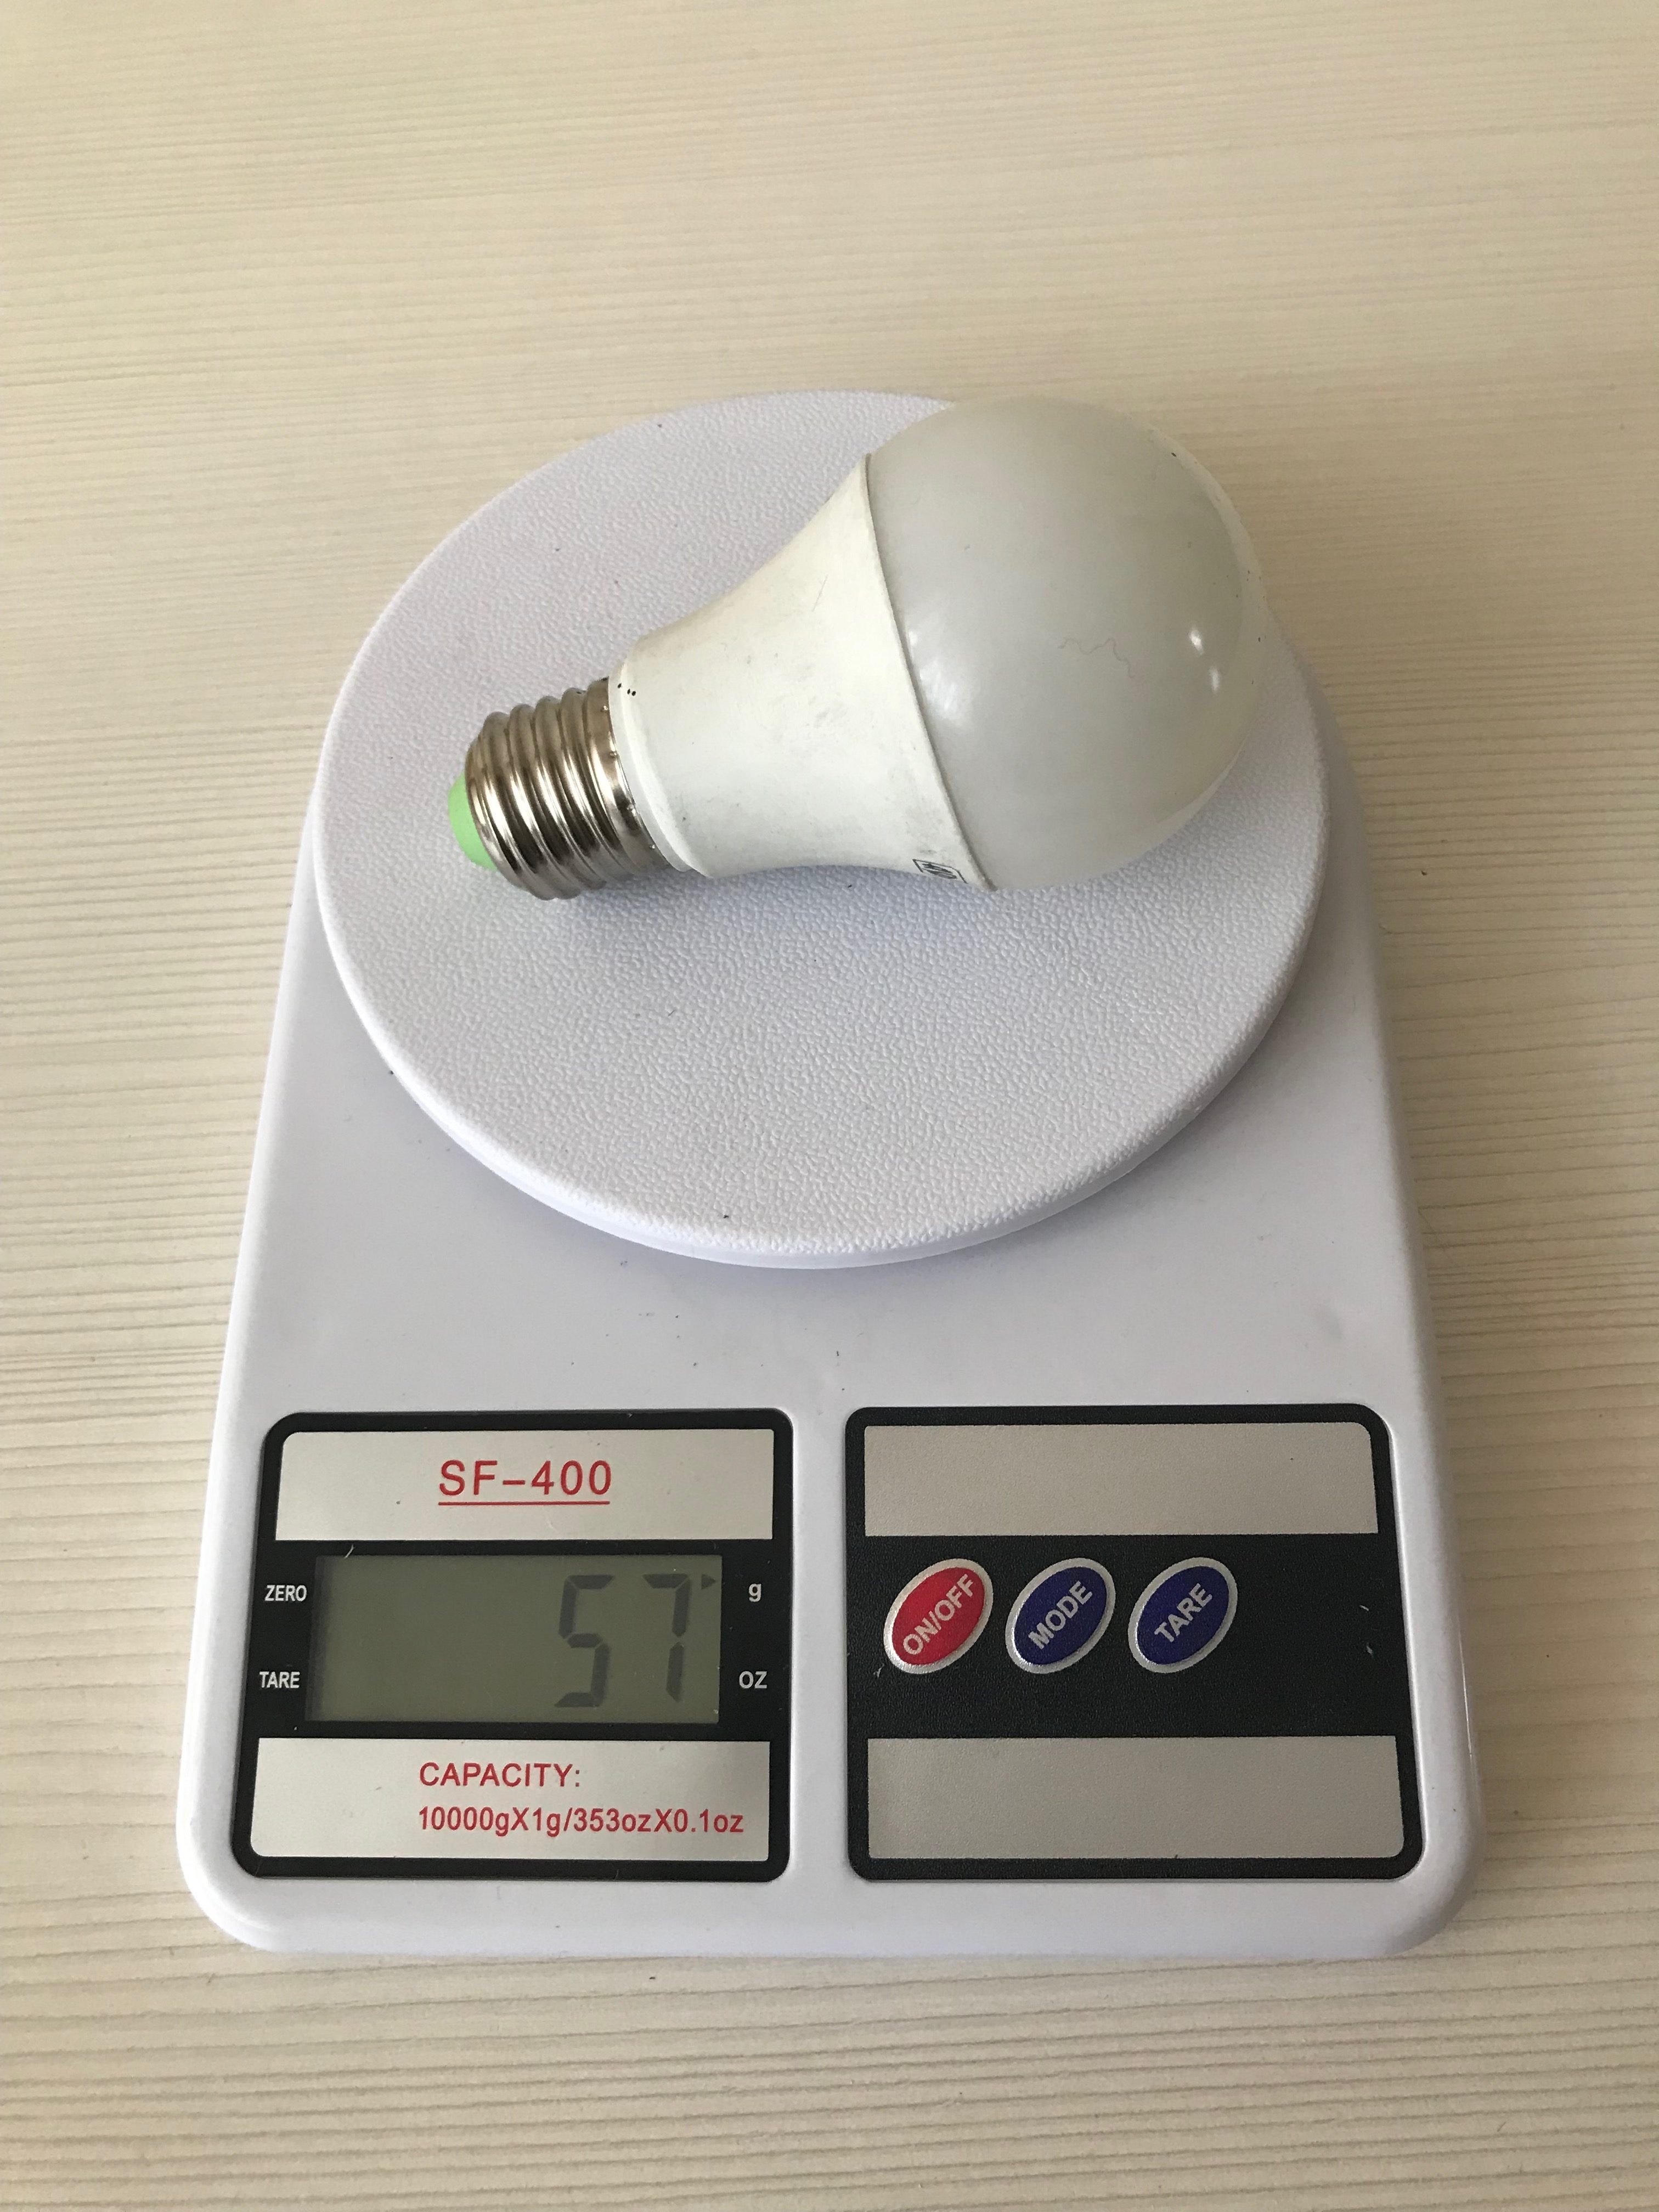 Berapa berat bola lampu hemat energi?